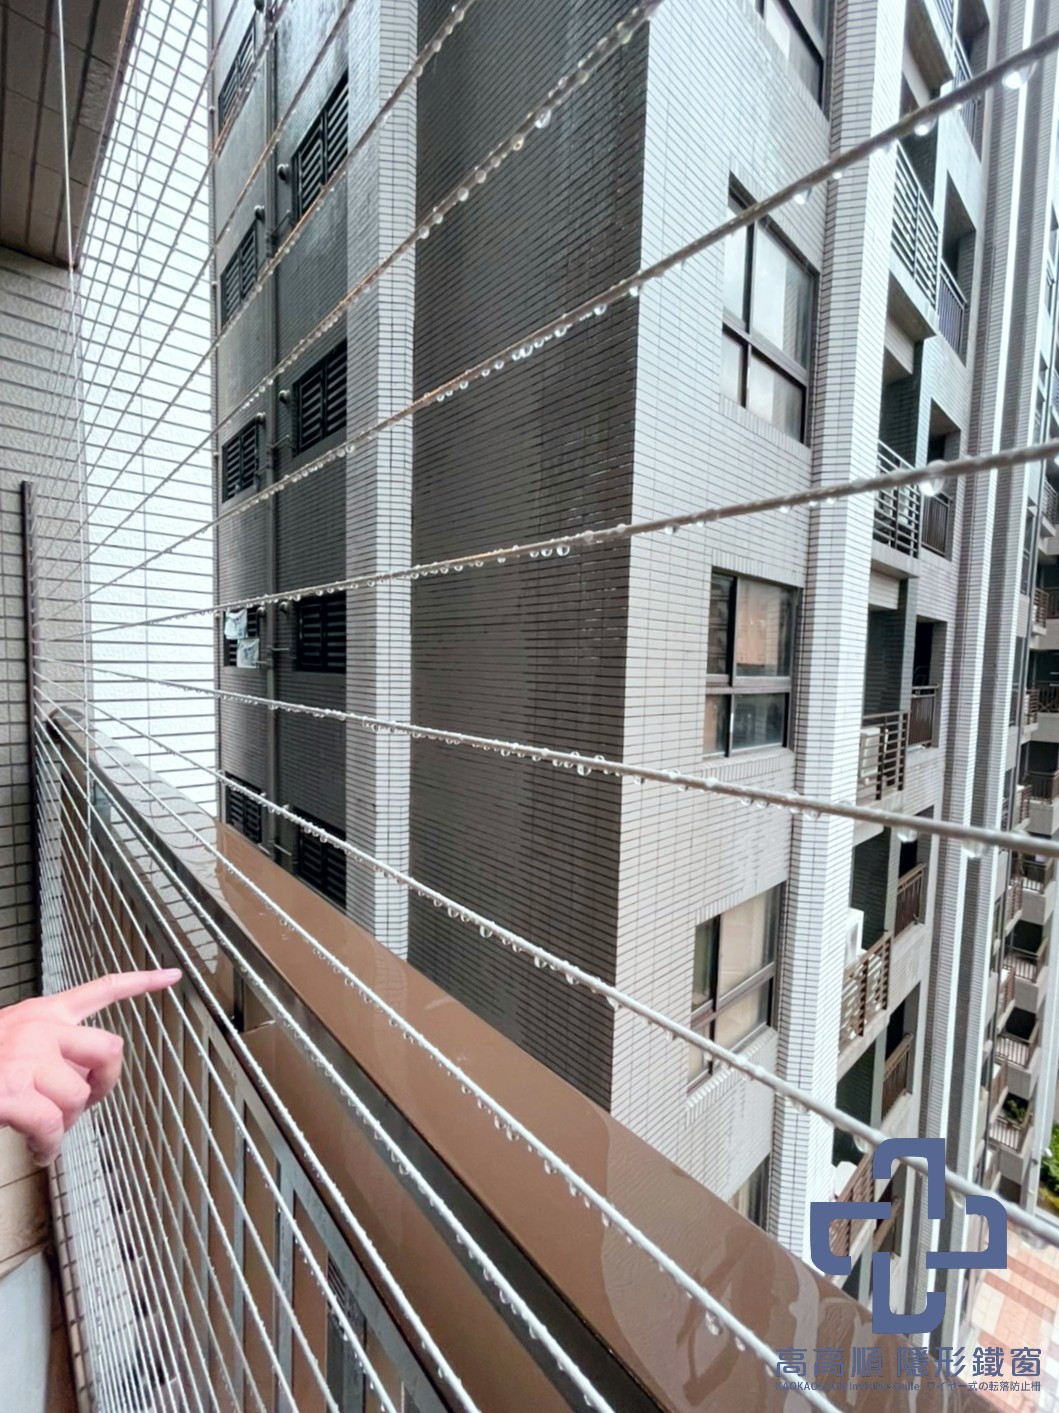 欄杆高度不夠、縫隙過大的話可以選擇局部安裝隱形鐵窗增加高度加強預防墜樓